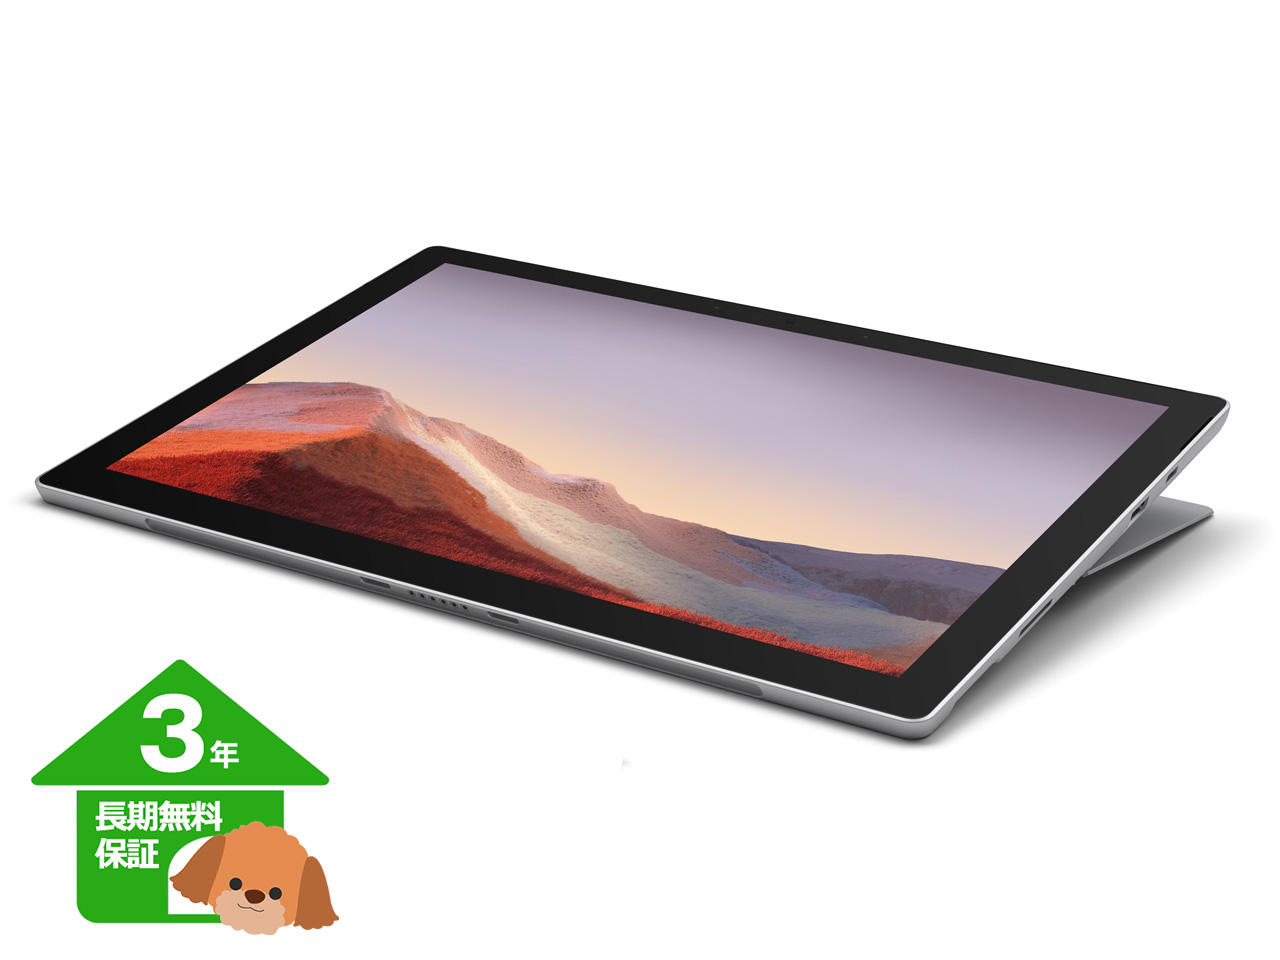 【マイクロソフト】 Surface Pro 7 2in1 タブレットPC 12.3型【3年保証】